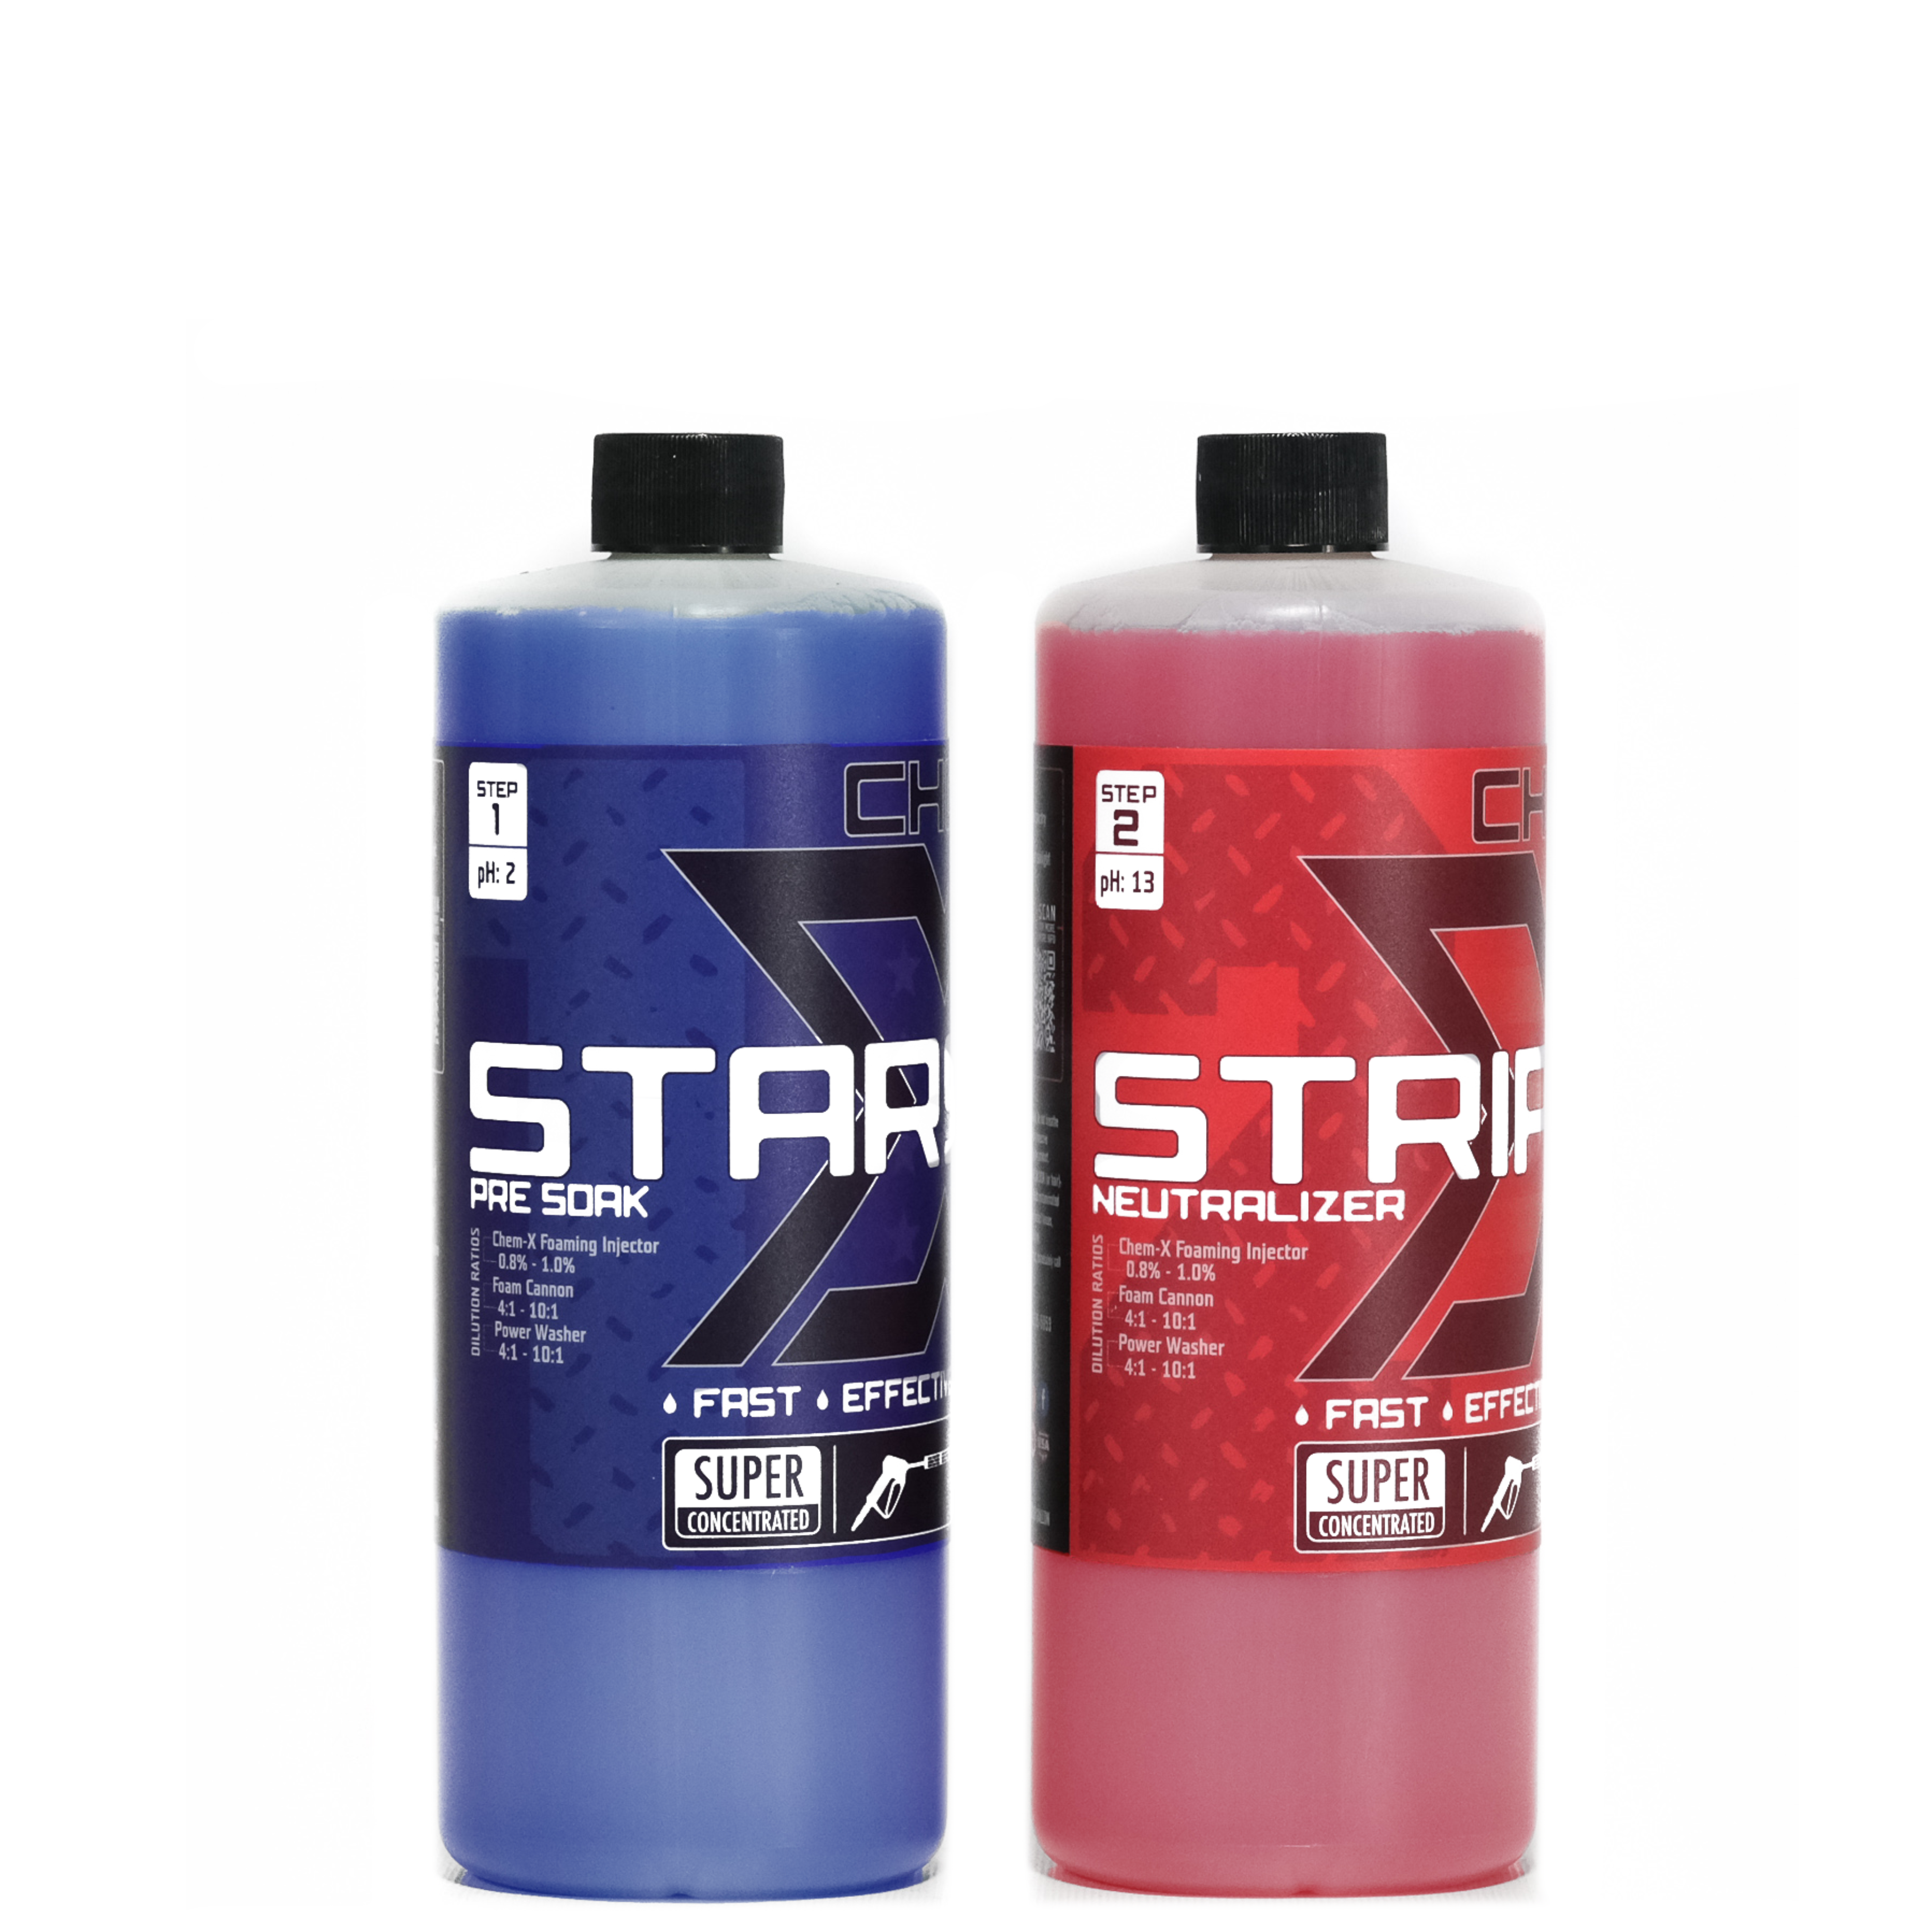 FOUR x Heavy Duty Spray Bottles + Star San Tips